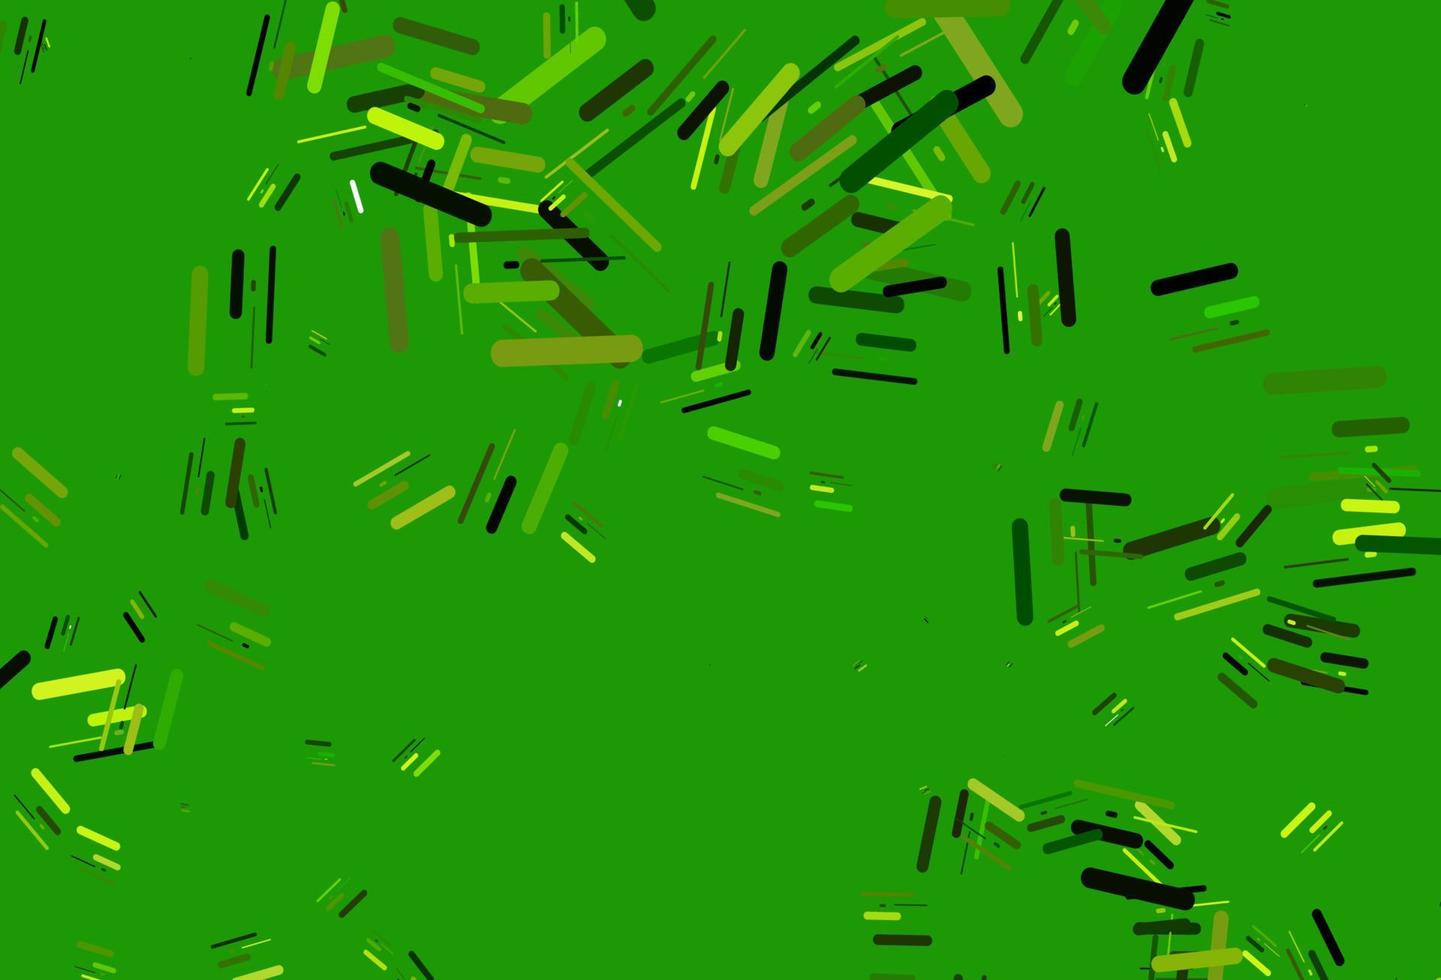 sfondo vettoriale verde chiaro con lunghe linee.